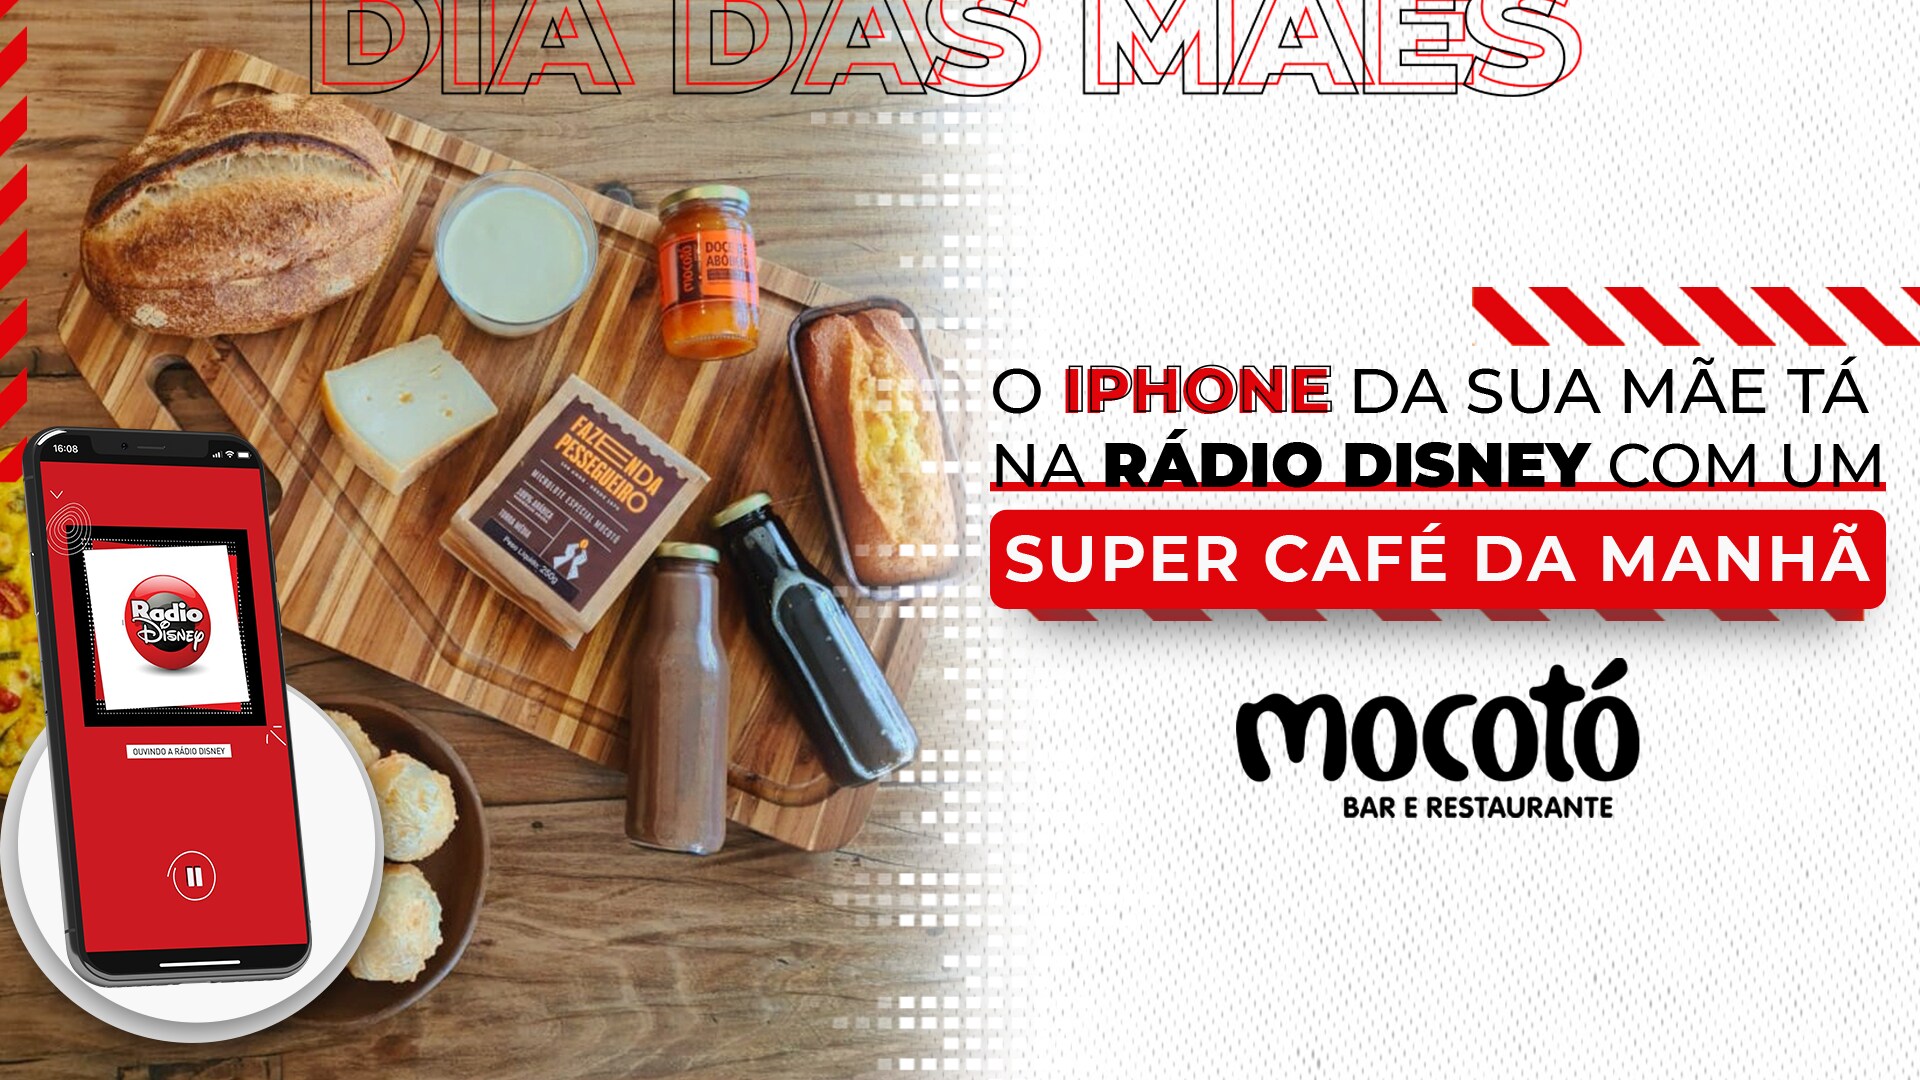 O IPHONE DA SUA MÃE TÁ NA RÁDIO DISNEY COM SUPER CAFÉ DA MANHÃ